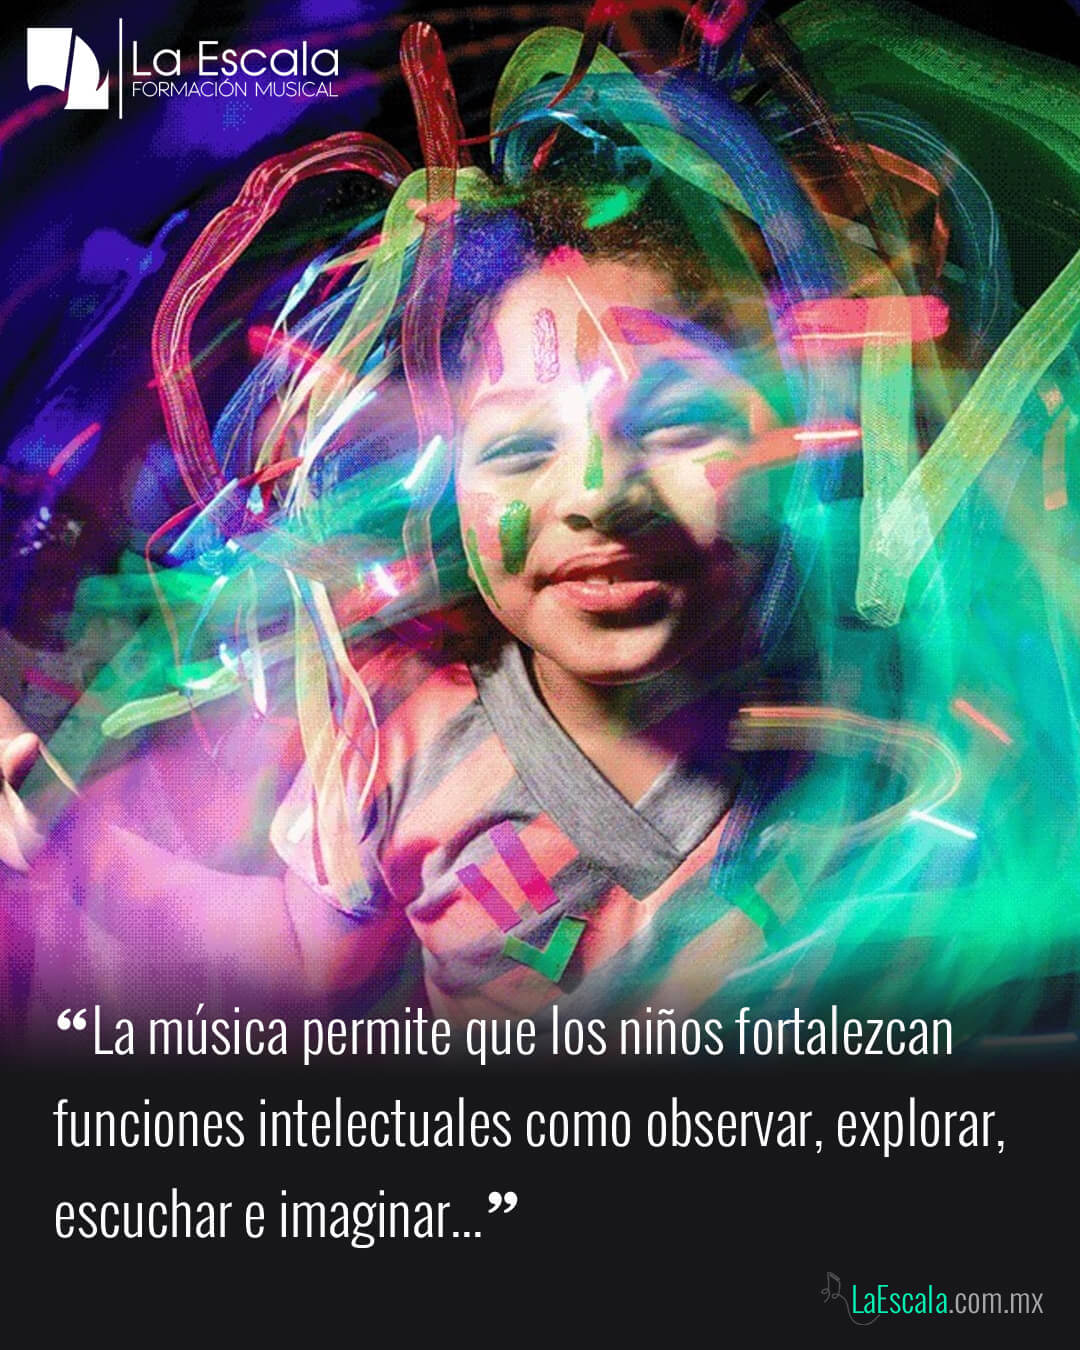 La música estimula la inteligencia de los niños